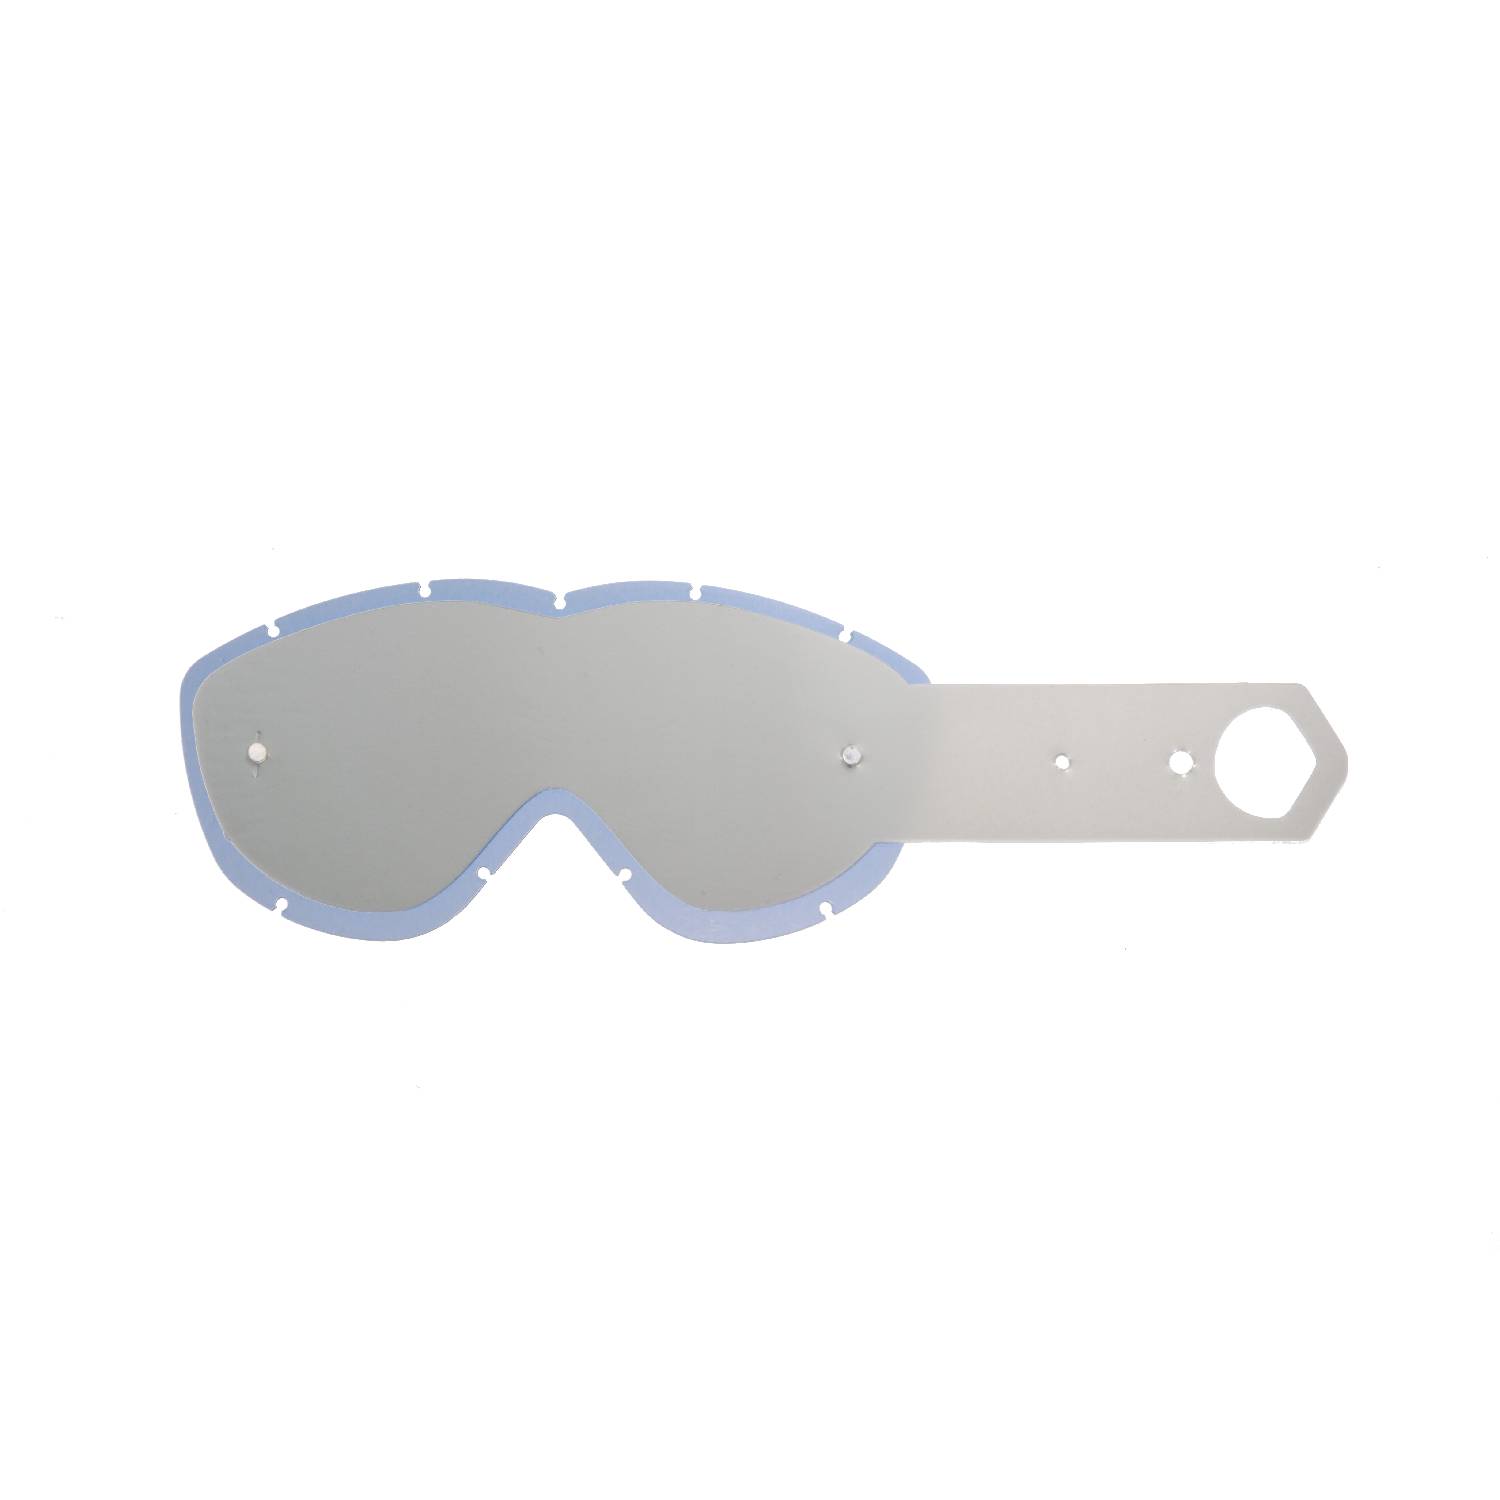 Lente fumè + 10 Strappi (Combo) compatibile per occhiale/maschera Spy Alloy / Targa